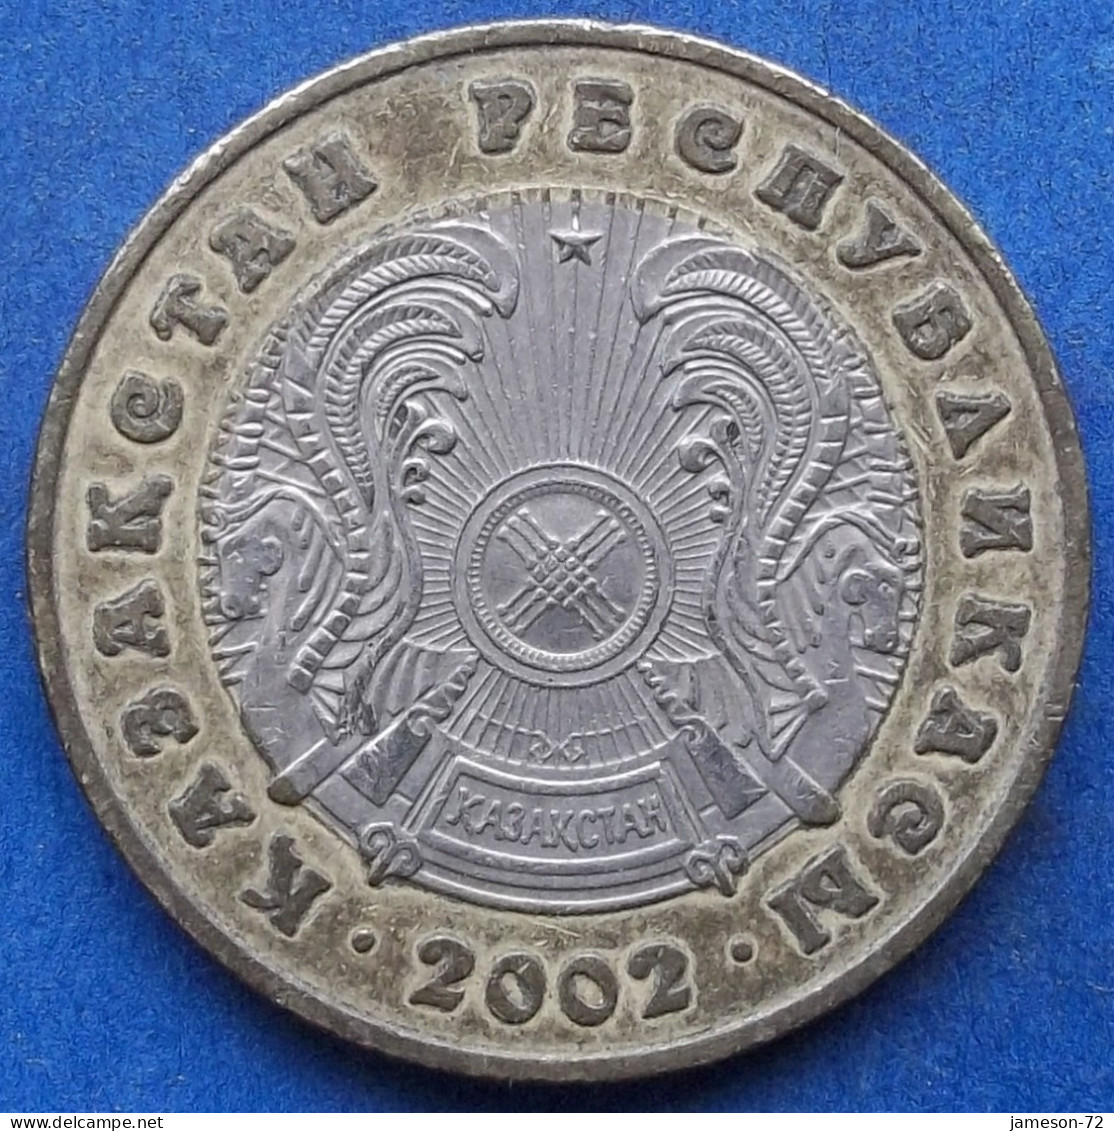 KAZAKHSTAN - 100 Tenge 2002 KM# 39 Independent Republic (1991) - Edelweiss Coins - Kazakhstan